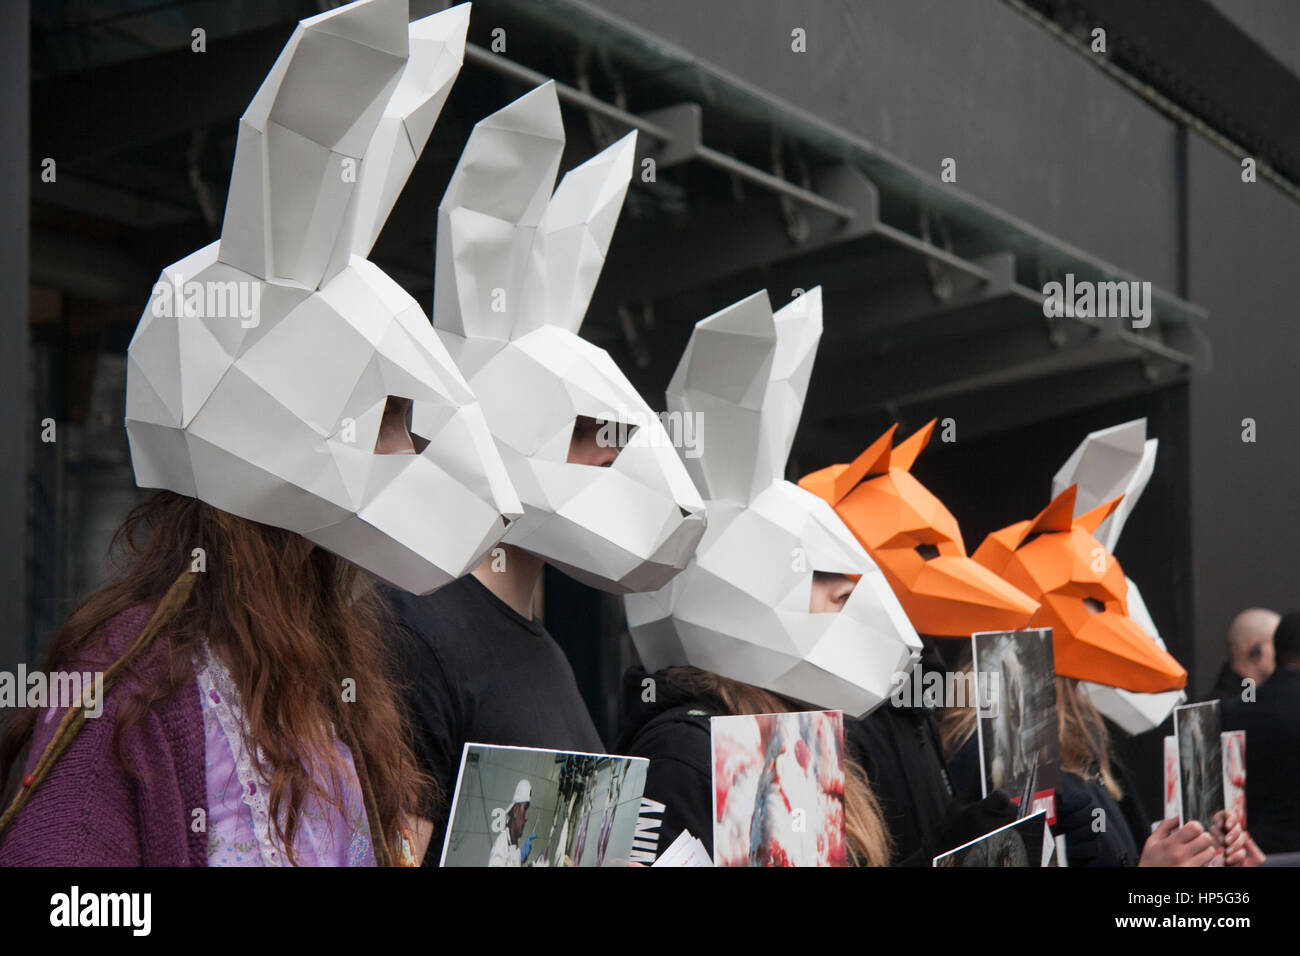 London UK. 18. Februar 2017. Eine Gruppe von Demonstranten Tierrechte inszenieren Protest gegen Haut-Handel außerhalb der London Fashion Week Credit: Amer Ghazzal/Alamy Live-Nachrichten Stockfoto